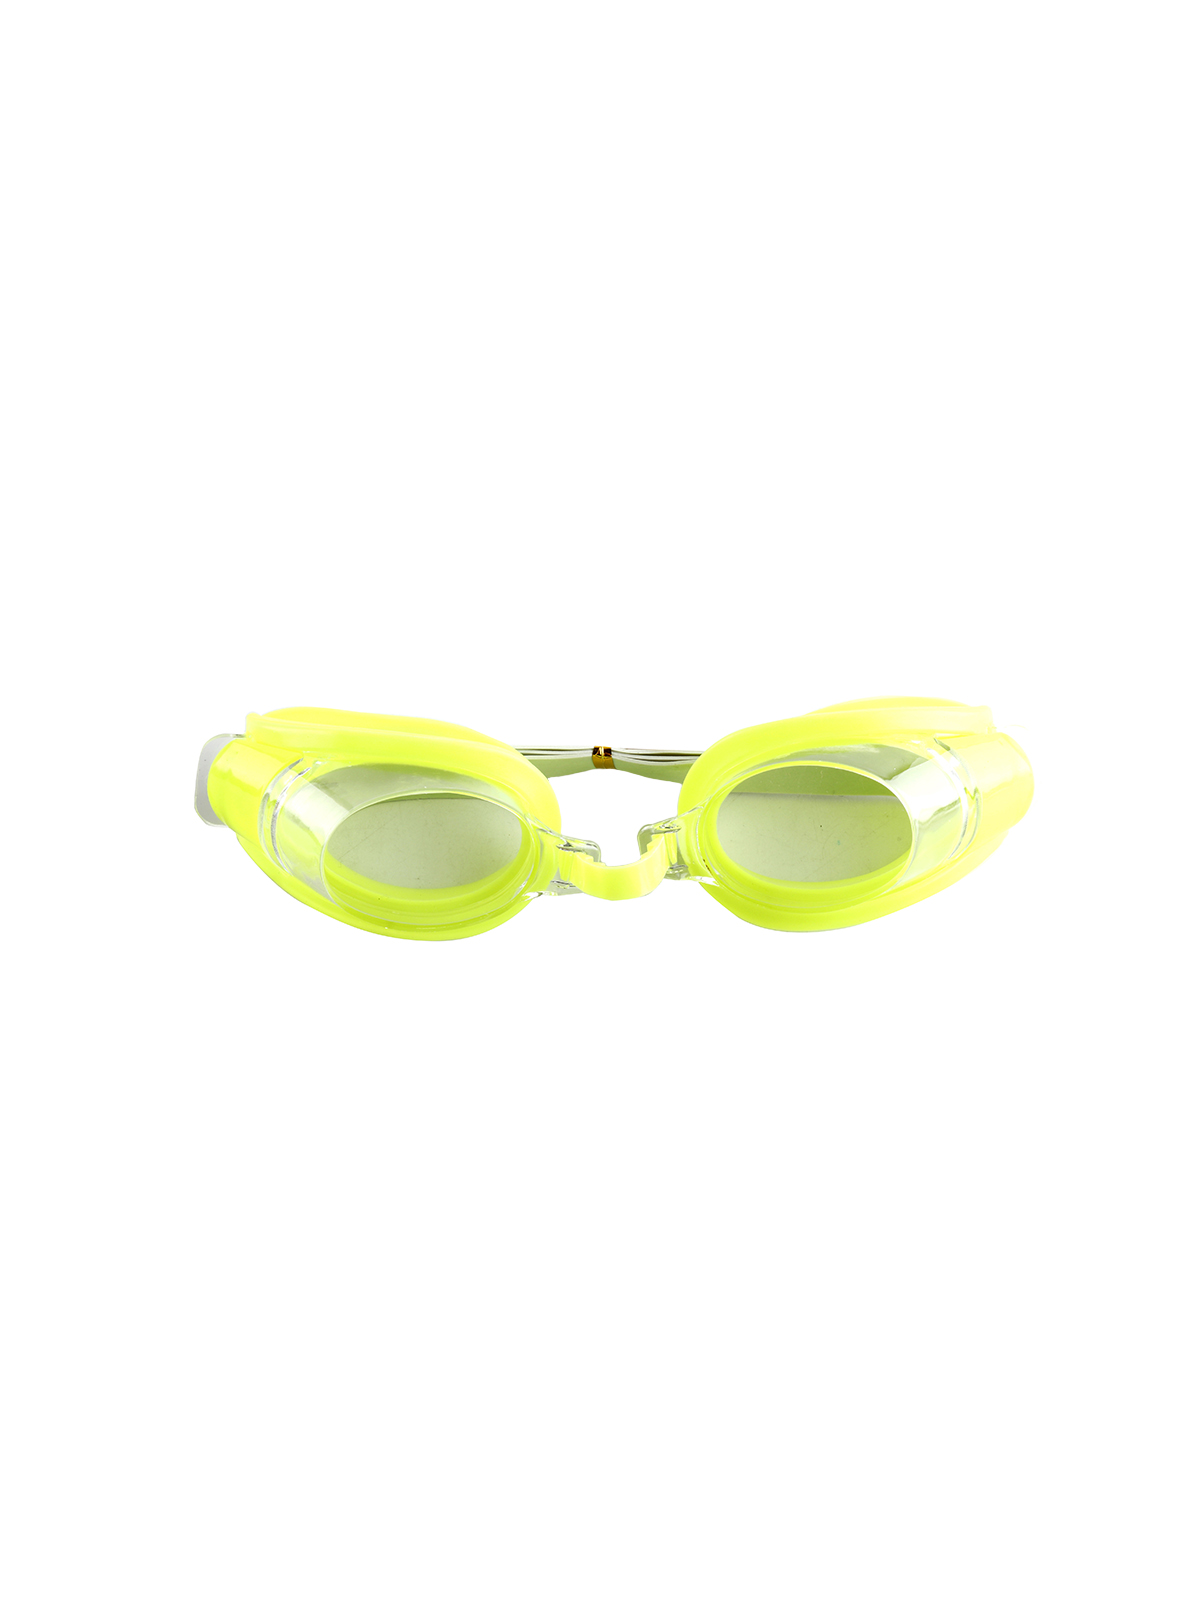 Очки для плавания + заглушки для ушей и зажимом для носа в ПВХ-чехле, пластик, 16 см, в асс-те